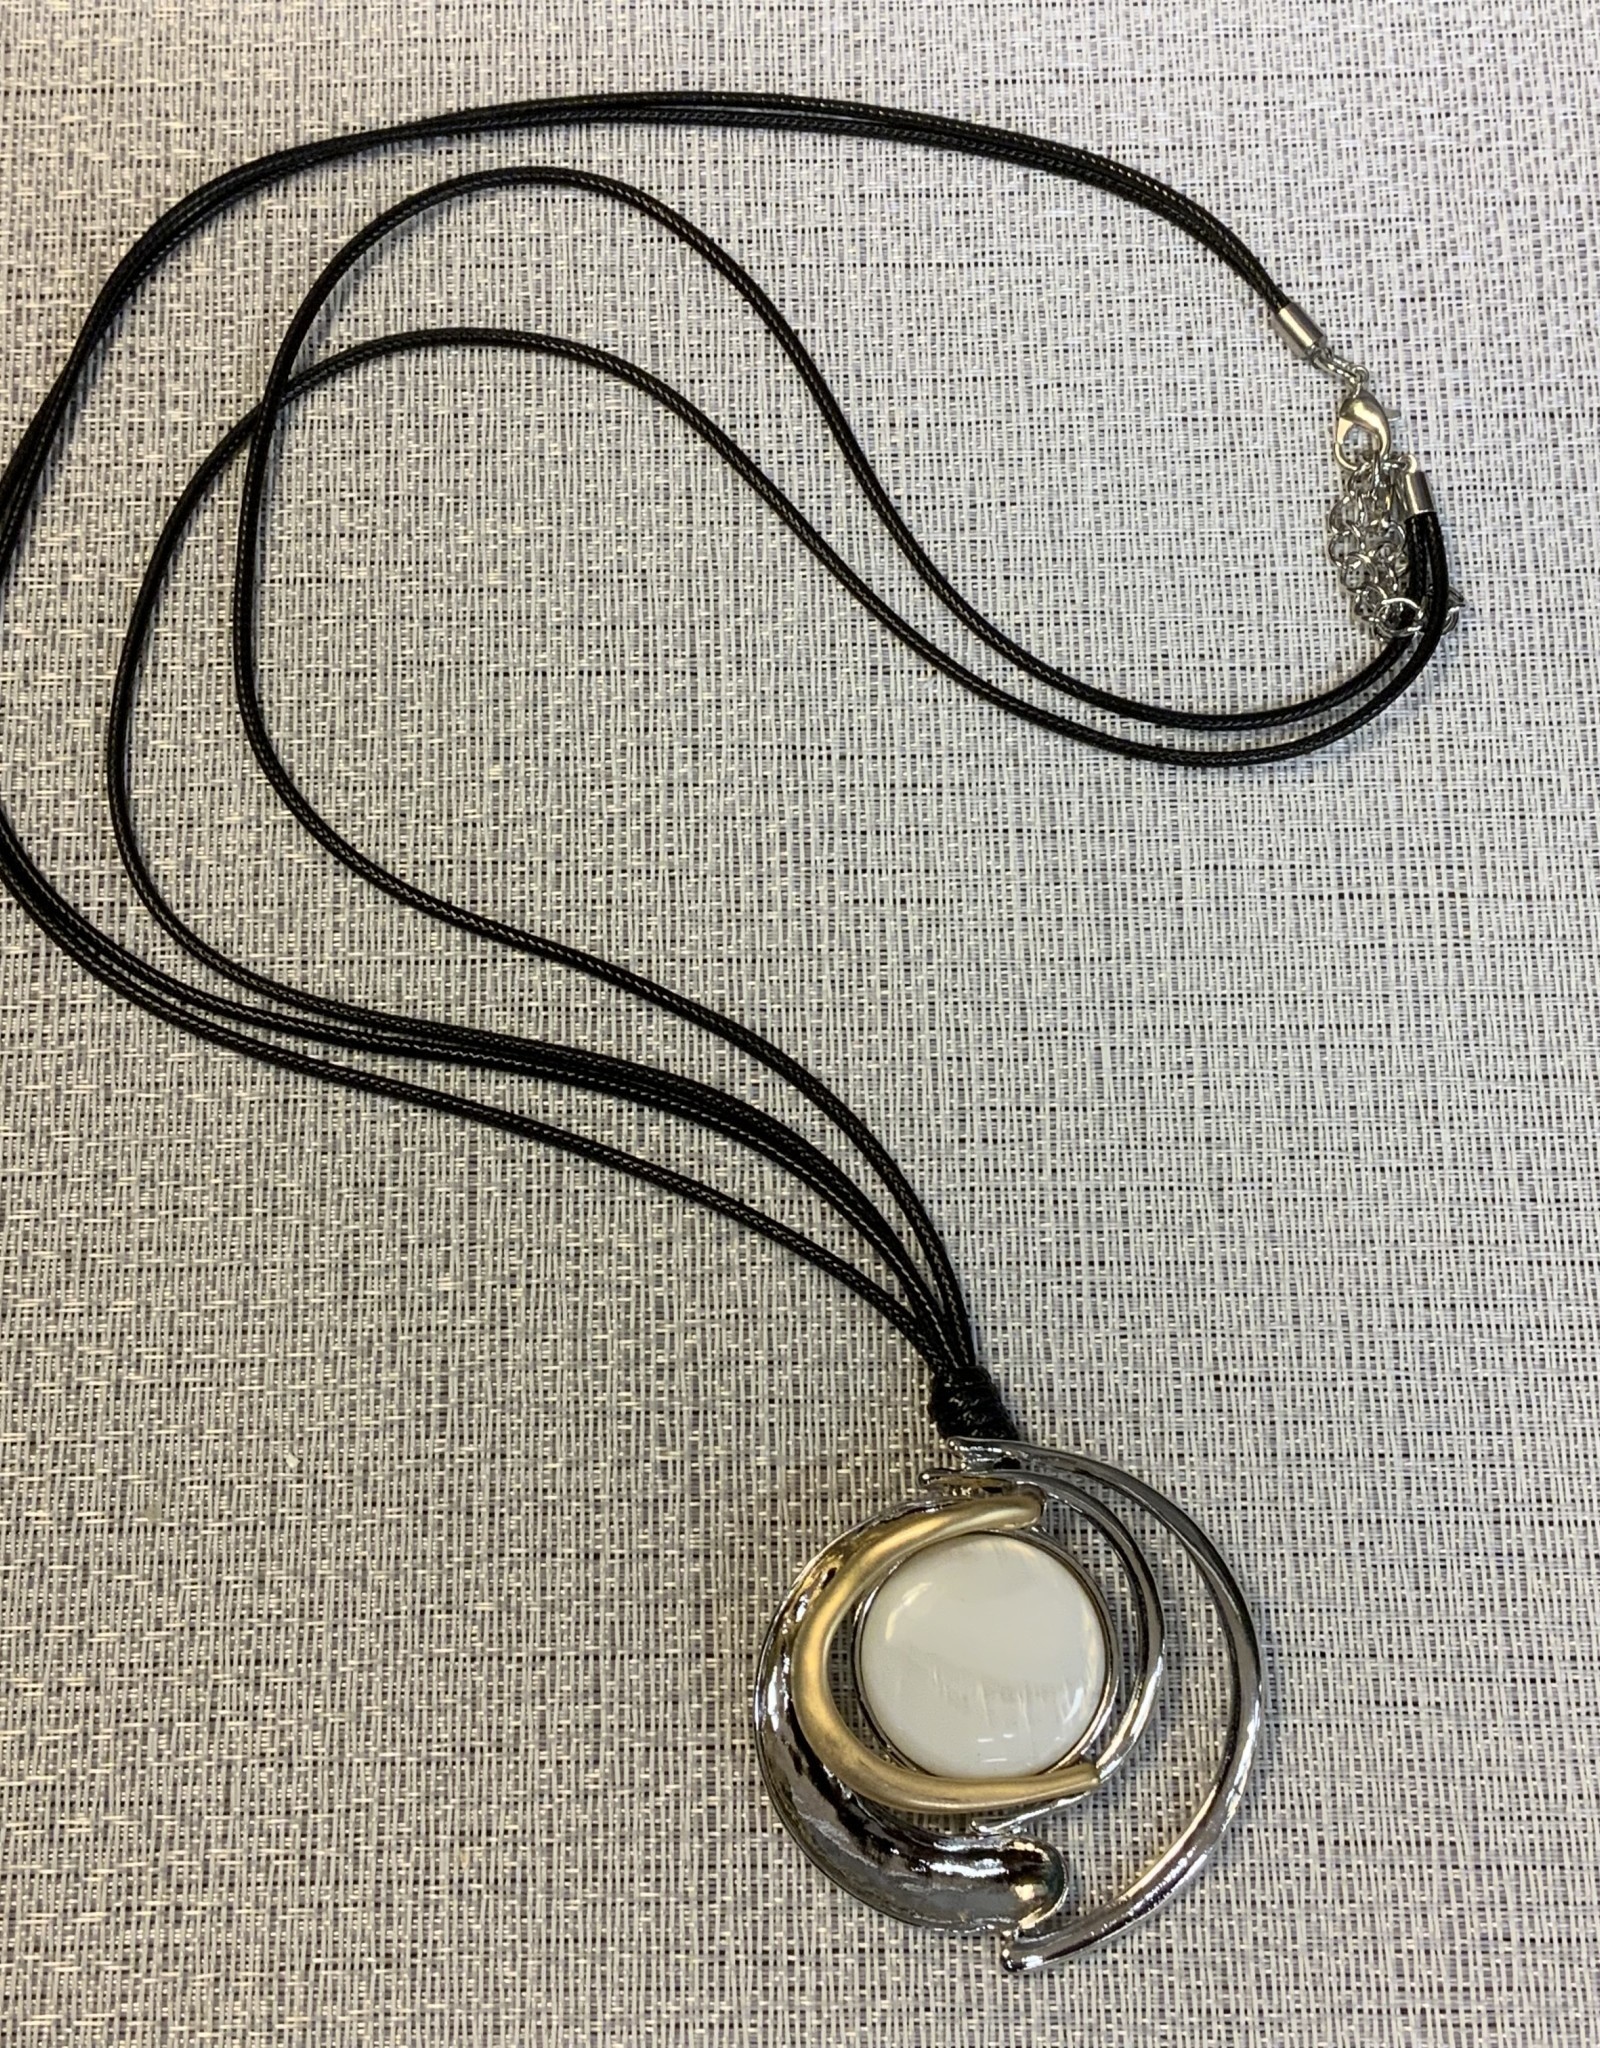 Black Cord w/Stone, Gold & Silver Swirl Pendant Necklace